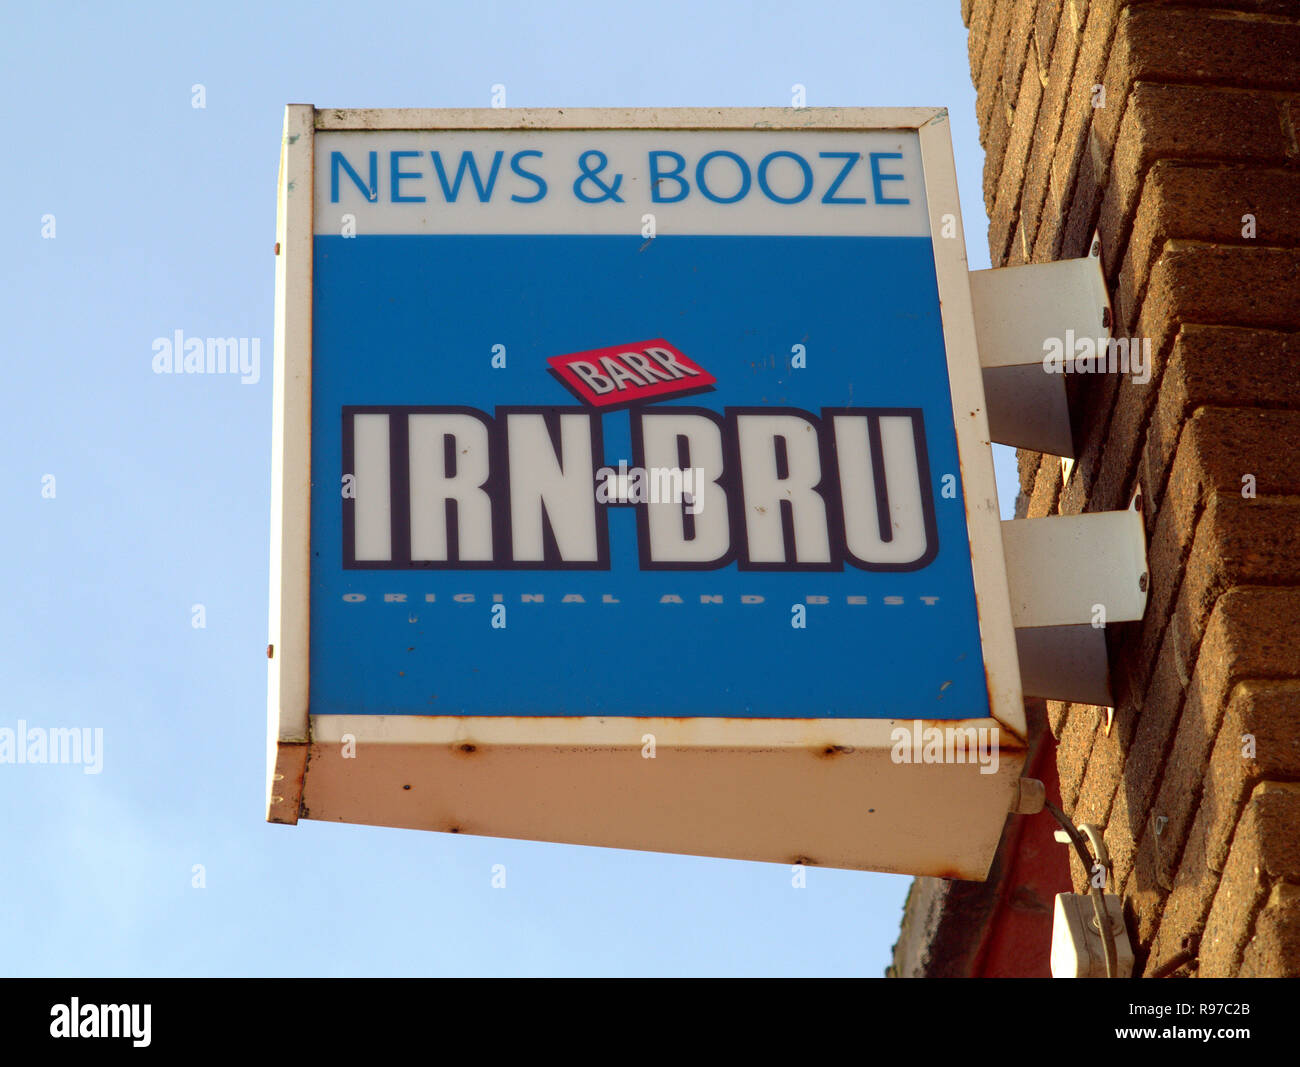 Marchand de panneau publicitaire pour irn bru IRN-BRU pour un magasin appelé news et booze ciel bleu Banque D'Images